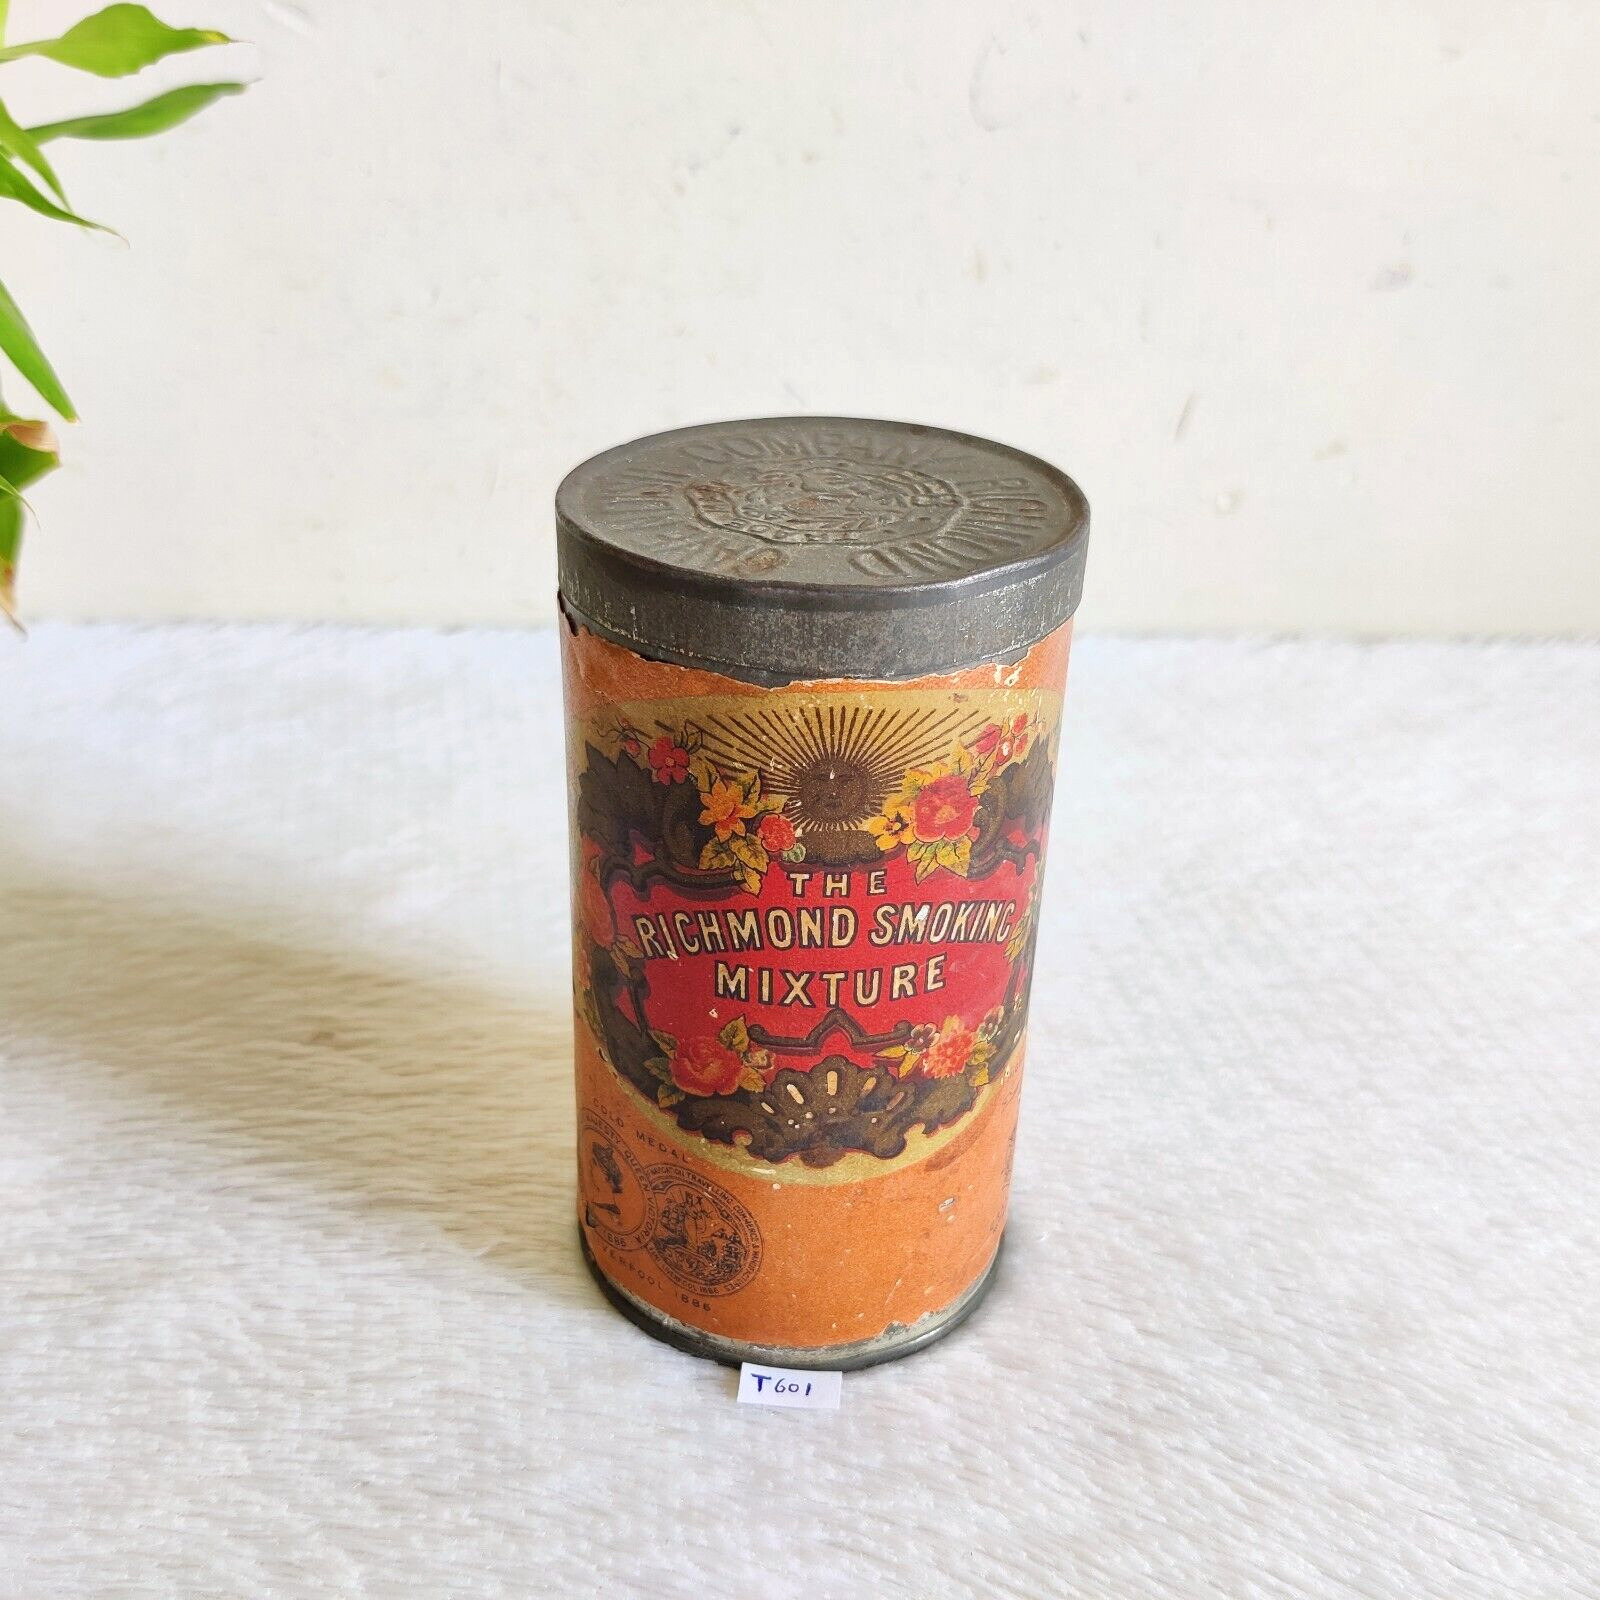 1940s Vintage Old Richmond Smoking Mixture Advertising Tin Box Rare England CG94